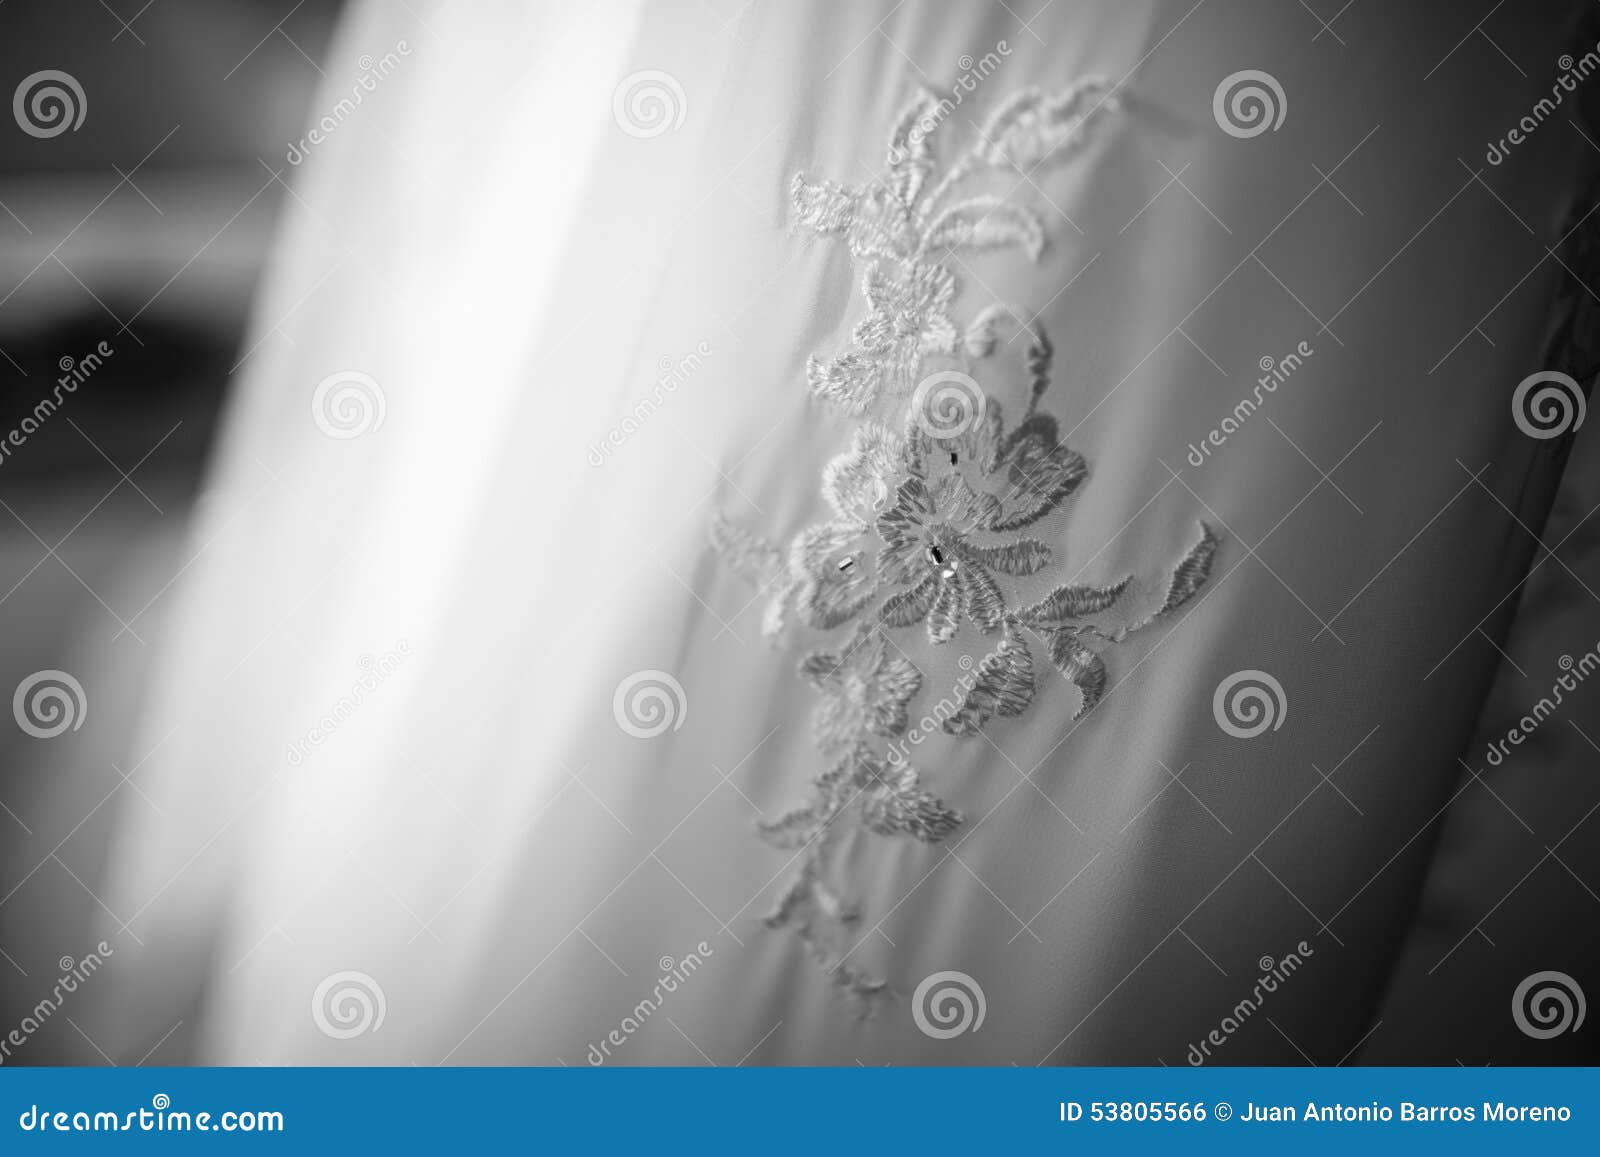 Dress wedding stock photo. Image of clothing, caucasian - 53805566